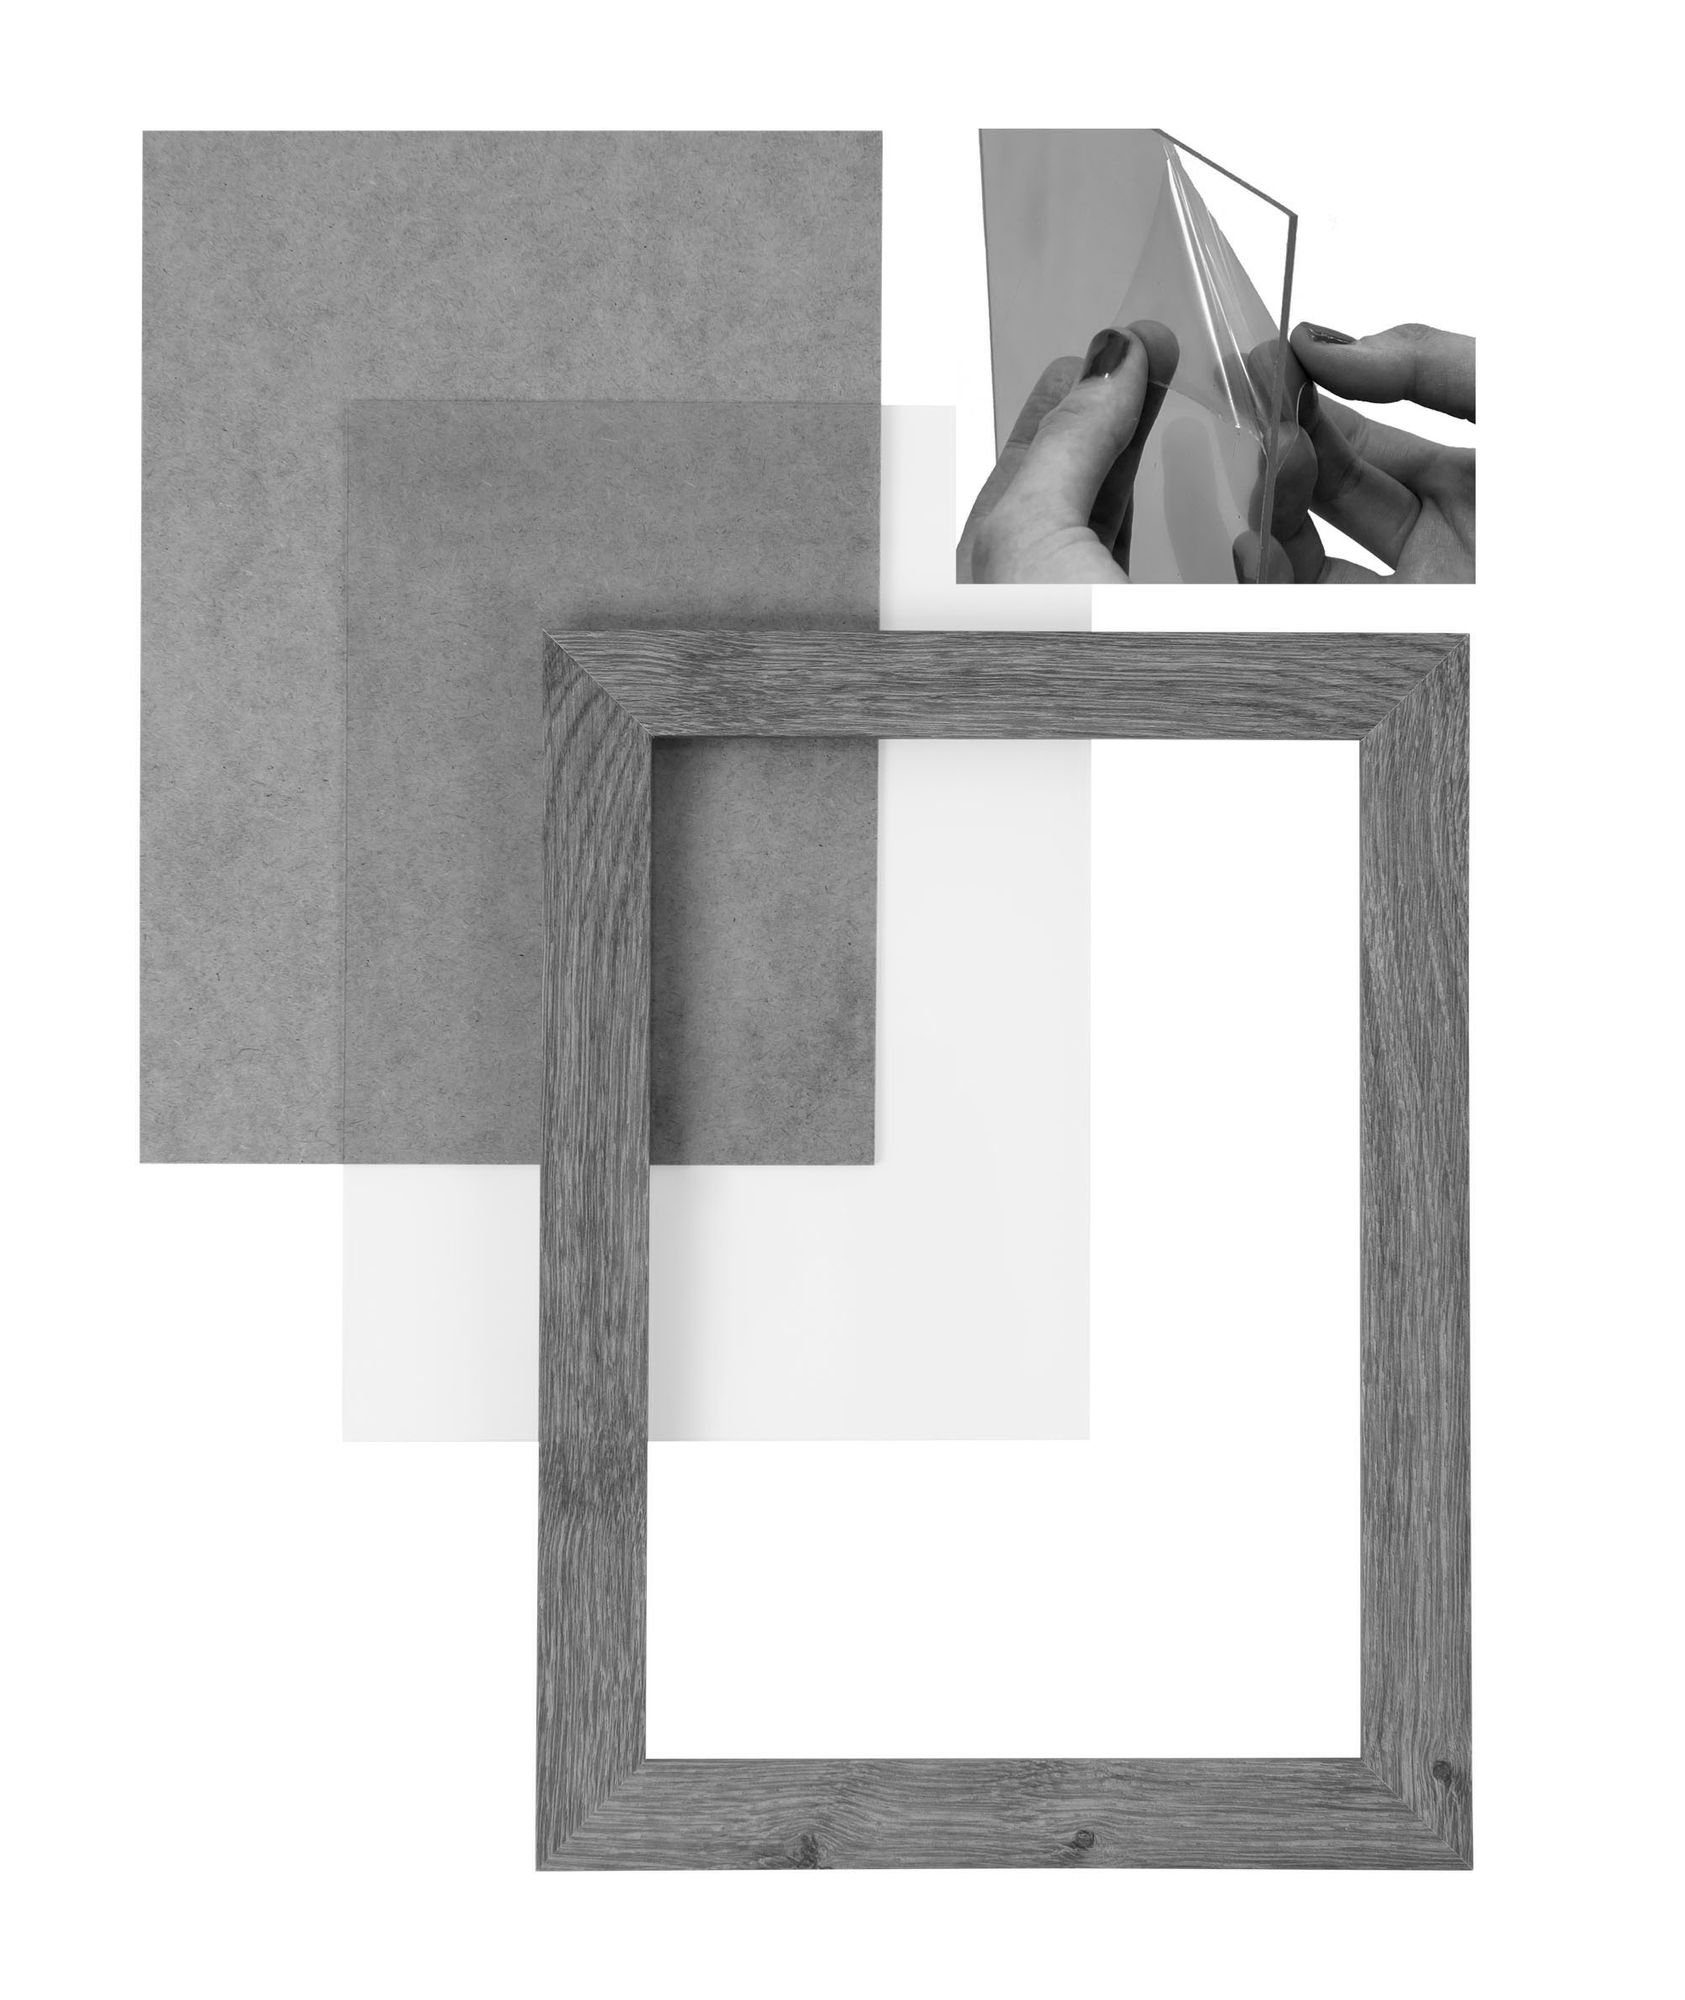 'Collage' Moderner FSC® altholz Holz 45x70 eckiger Bilderrahmen Maß in MDF CLAMARO Aufhänger inkl. Bilderrahmen Rahmen Clamaro handgefertigt und Rückwand nach eiche Acrylglas,